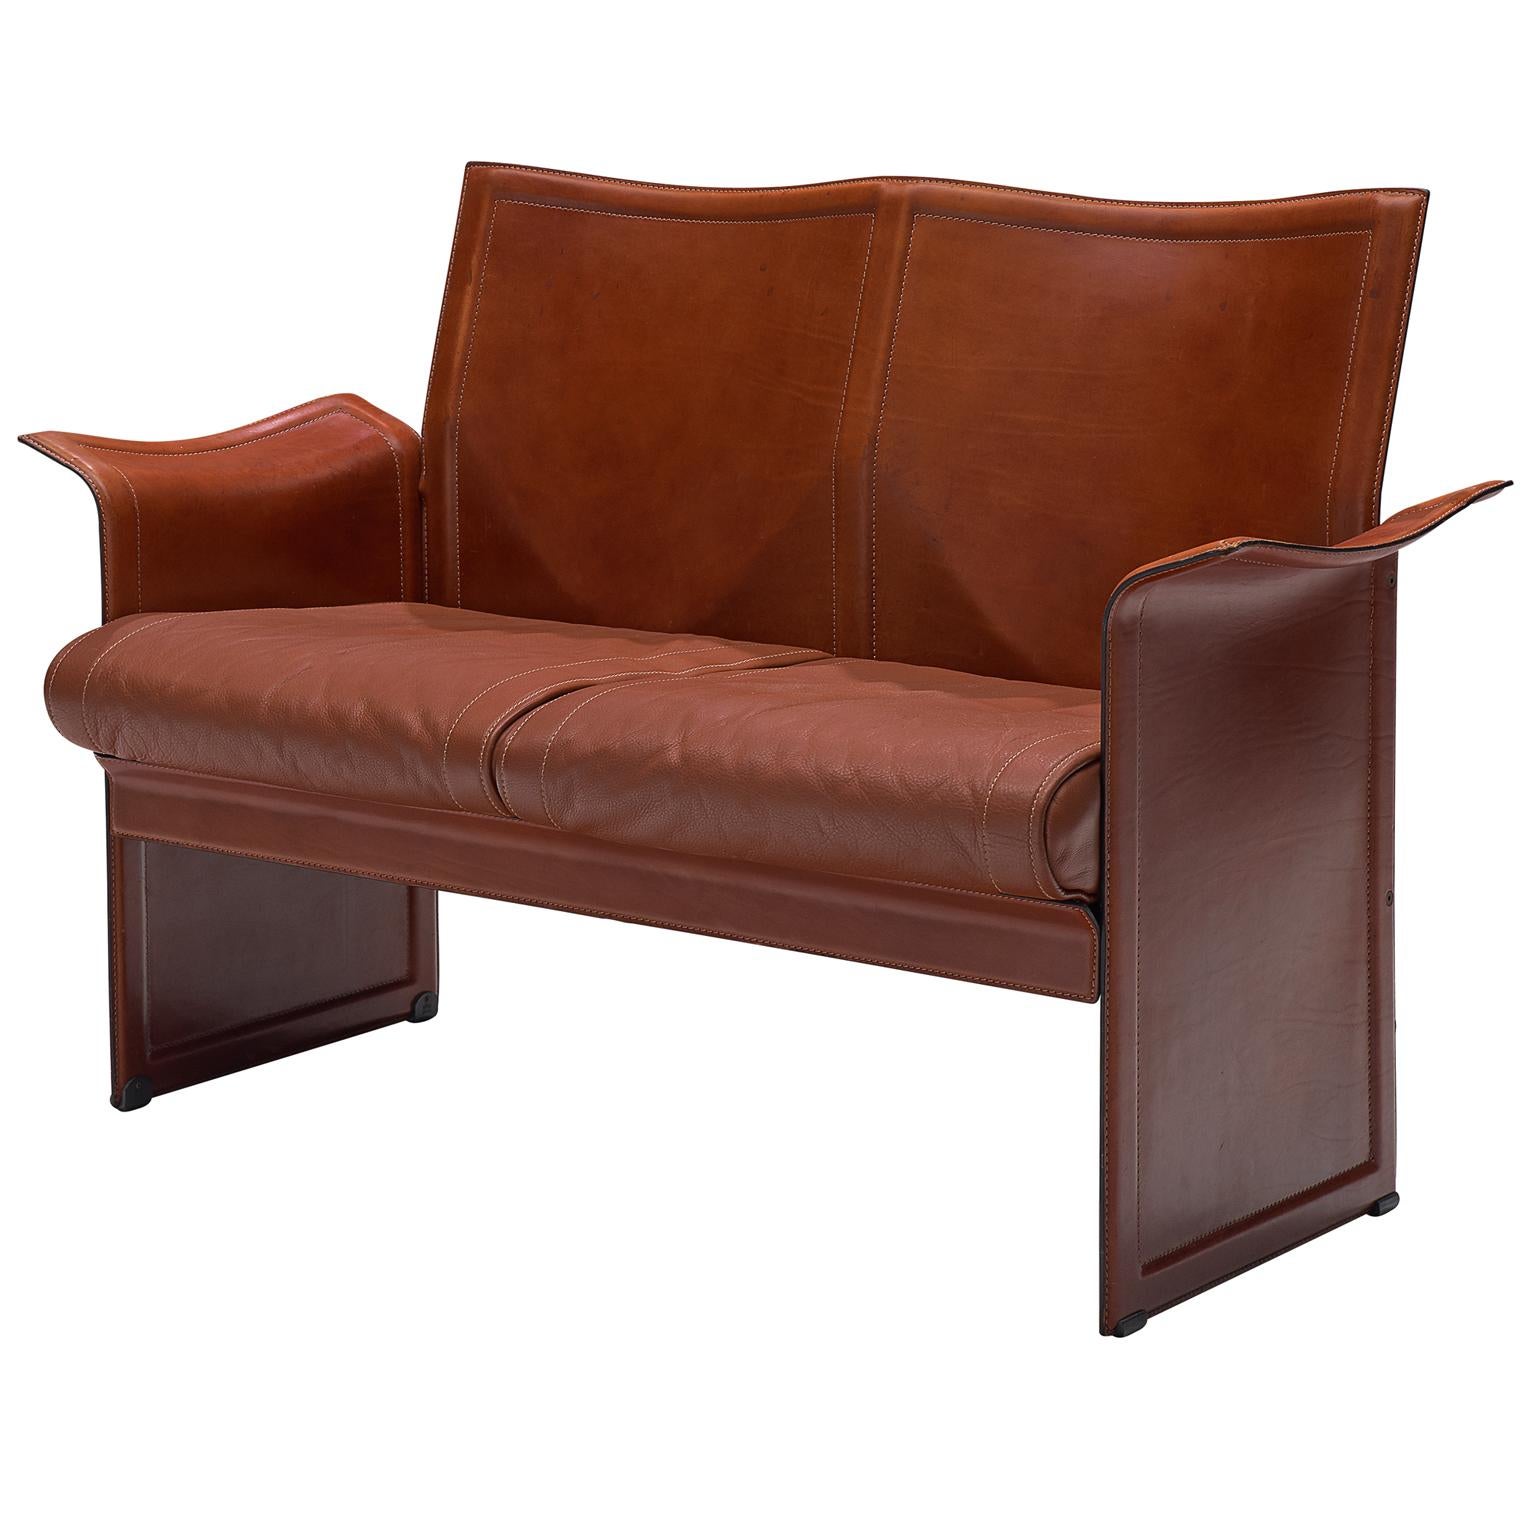 Tito Agnoli 'Korium' Sofa in Cognac Leather